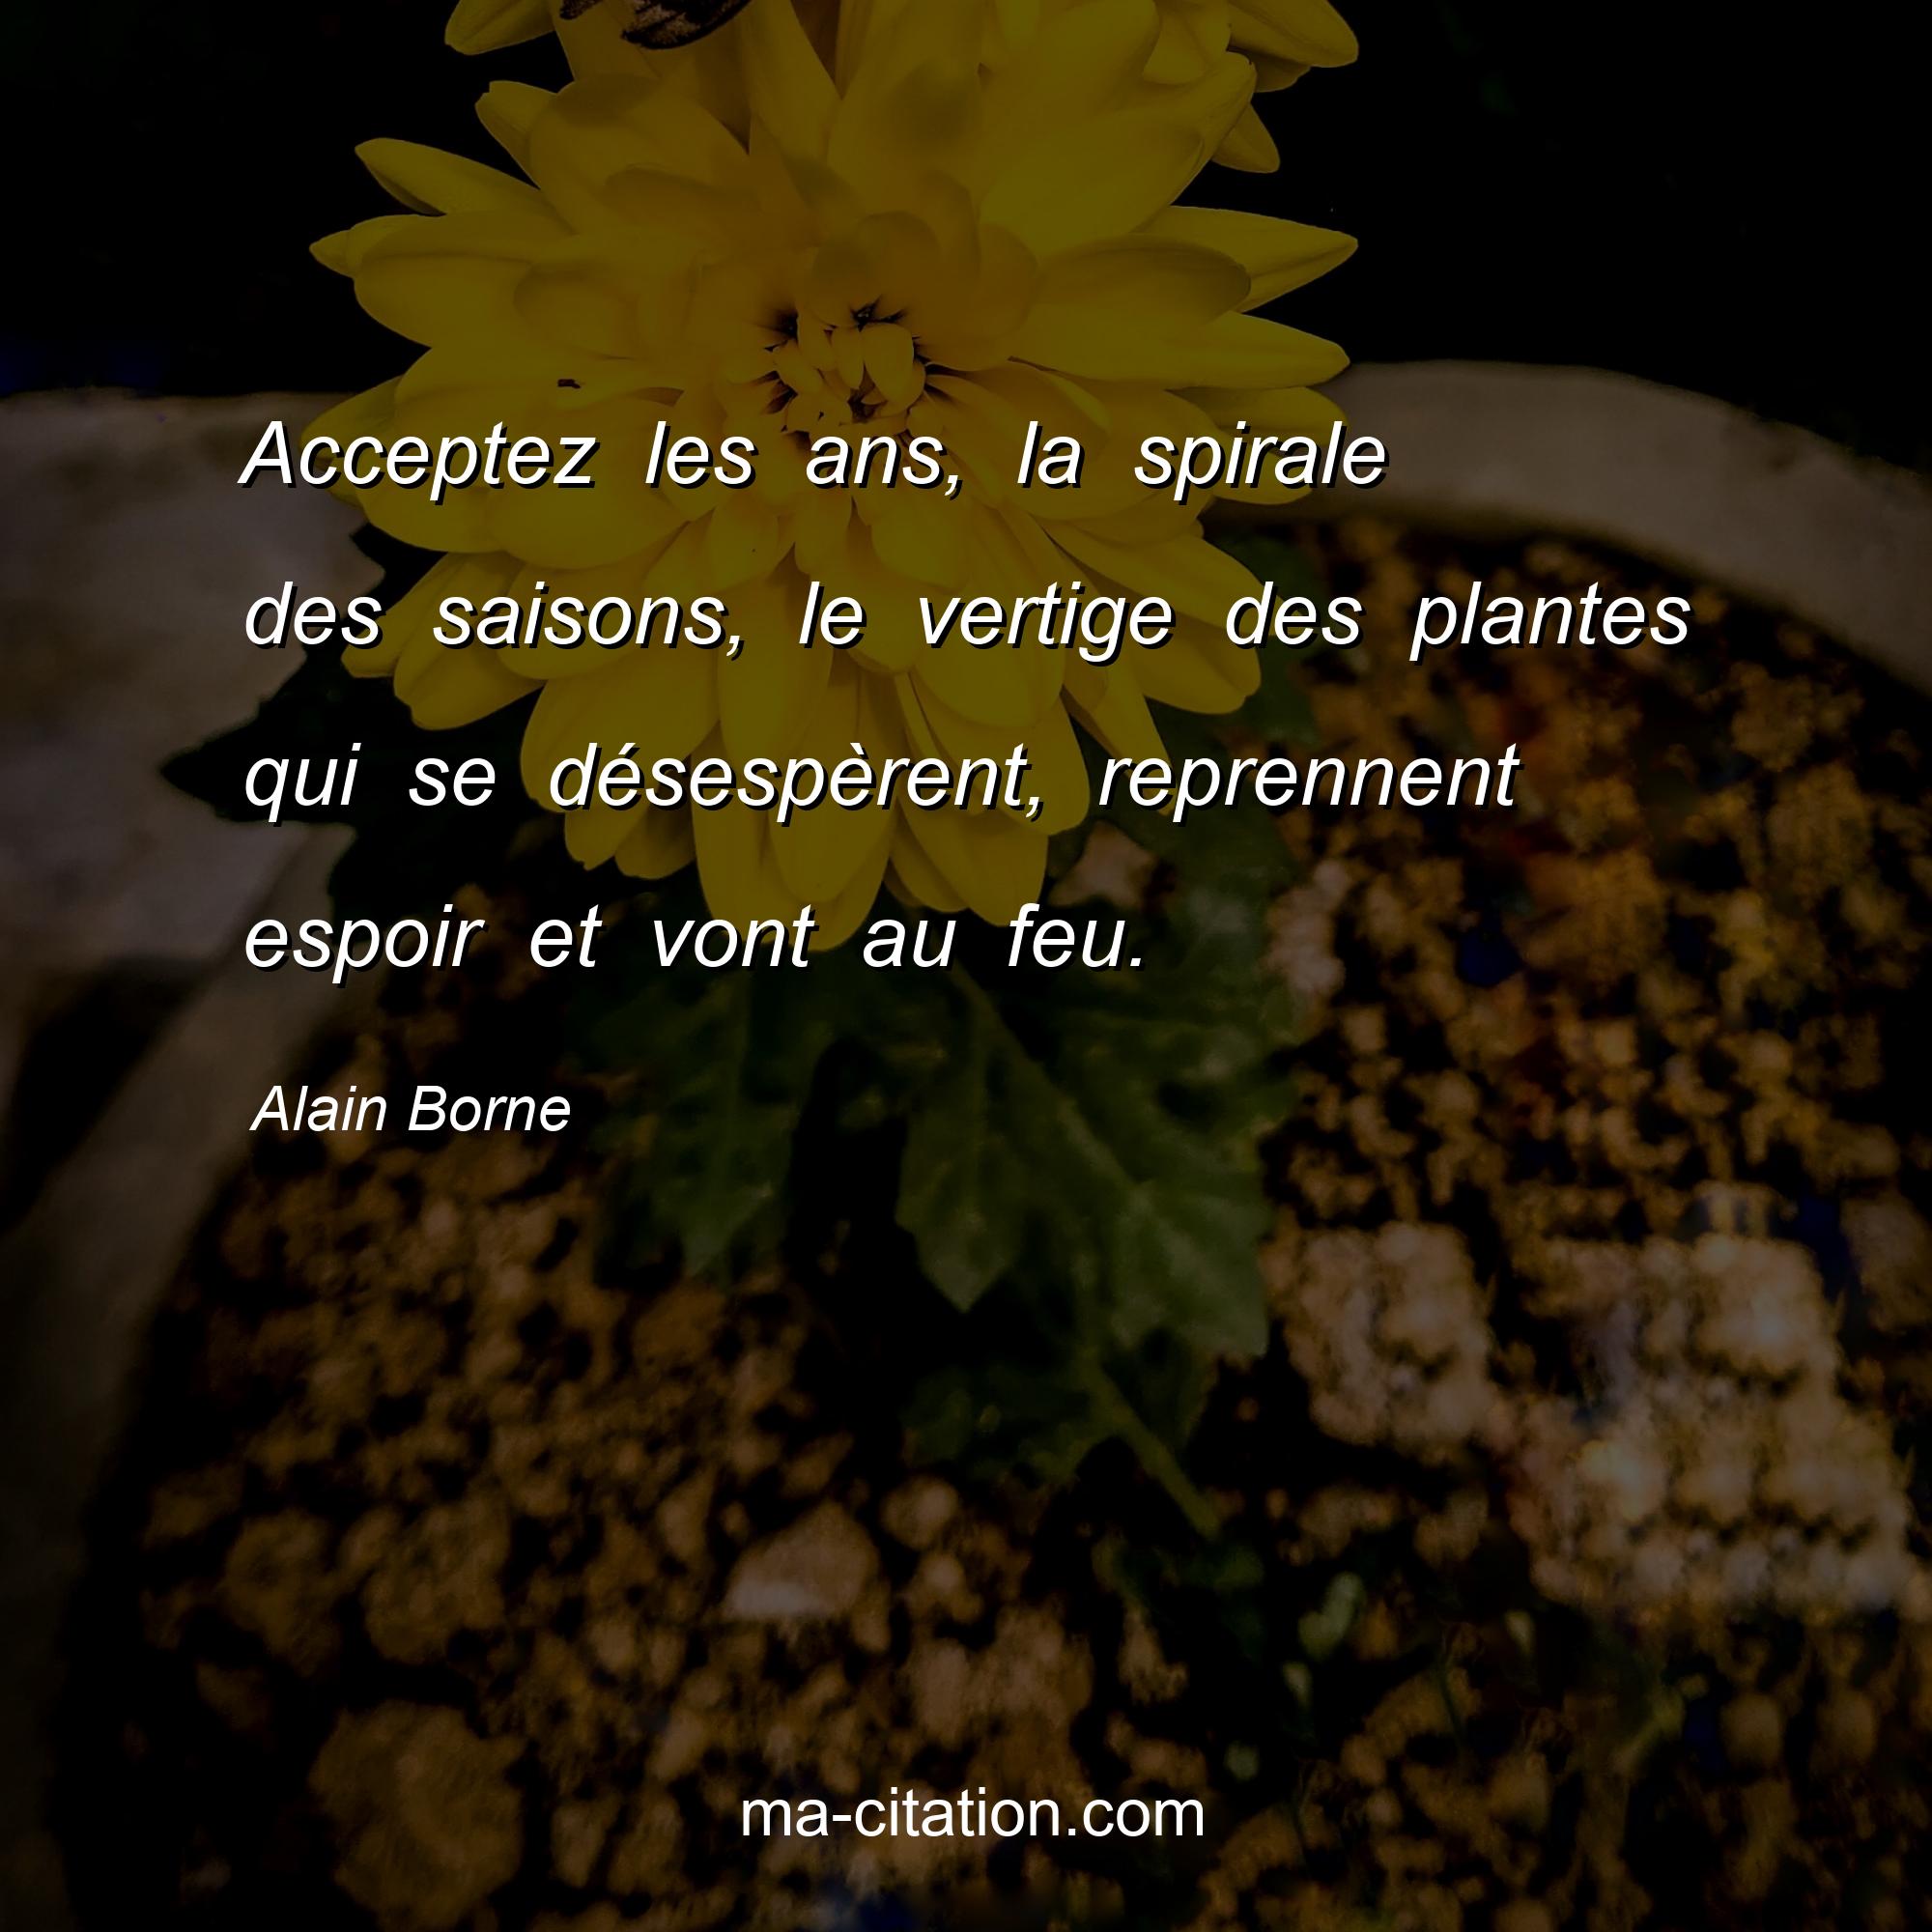 Alain Borne : Acceptez les ans, la spirale des saisons, le vertige des plantes qui se désespèrent, reprennent espoir et vont au feu.